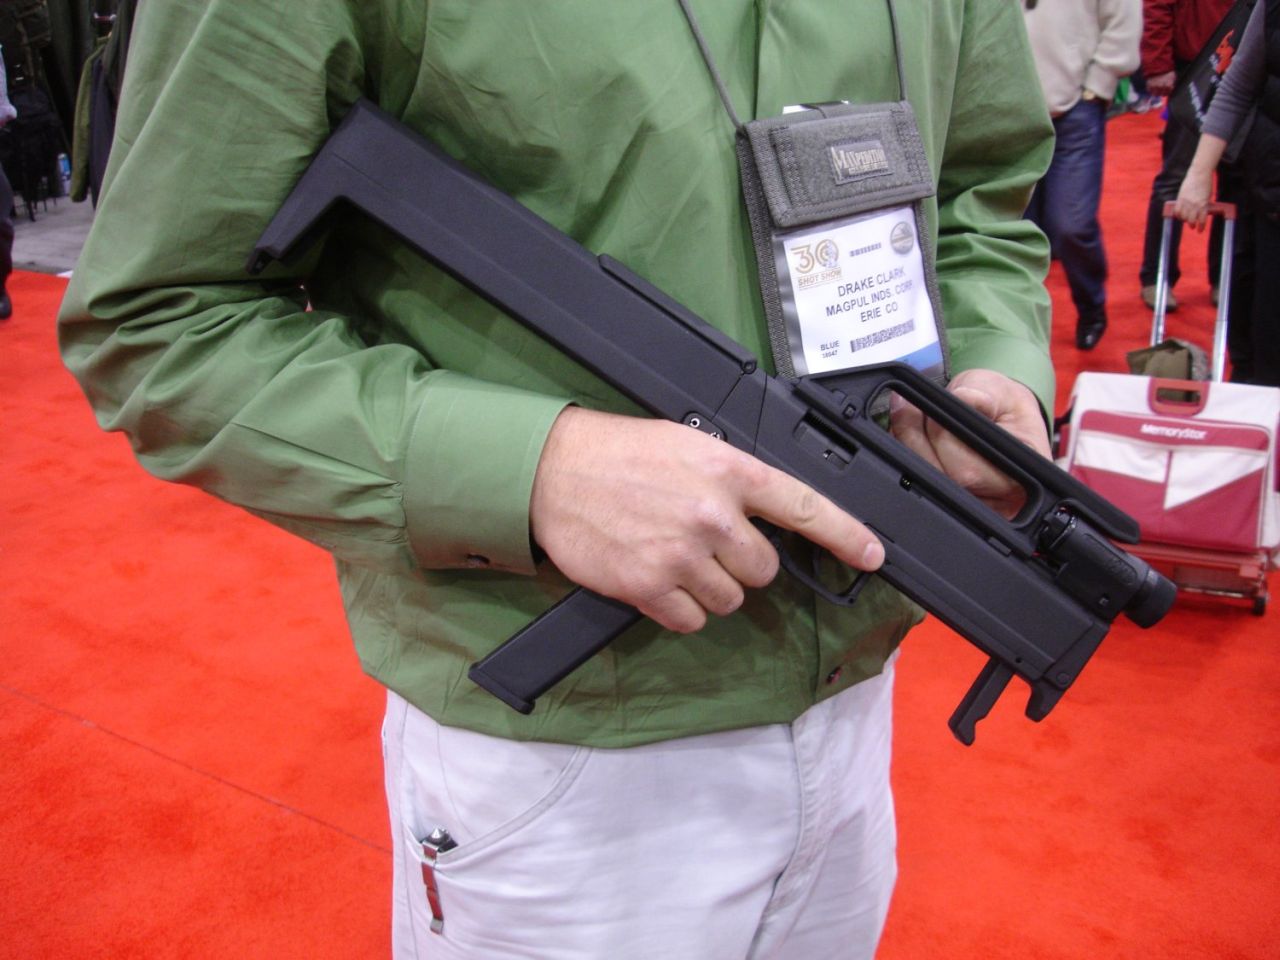 Militaria, karabiny, pistolety i noże - nowoczesna i innowacyjna broń